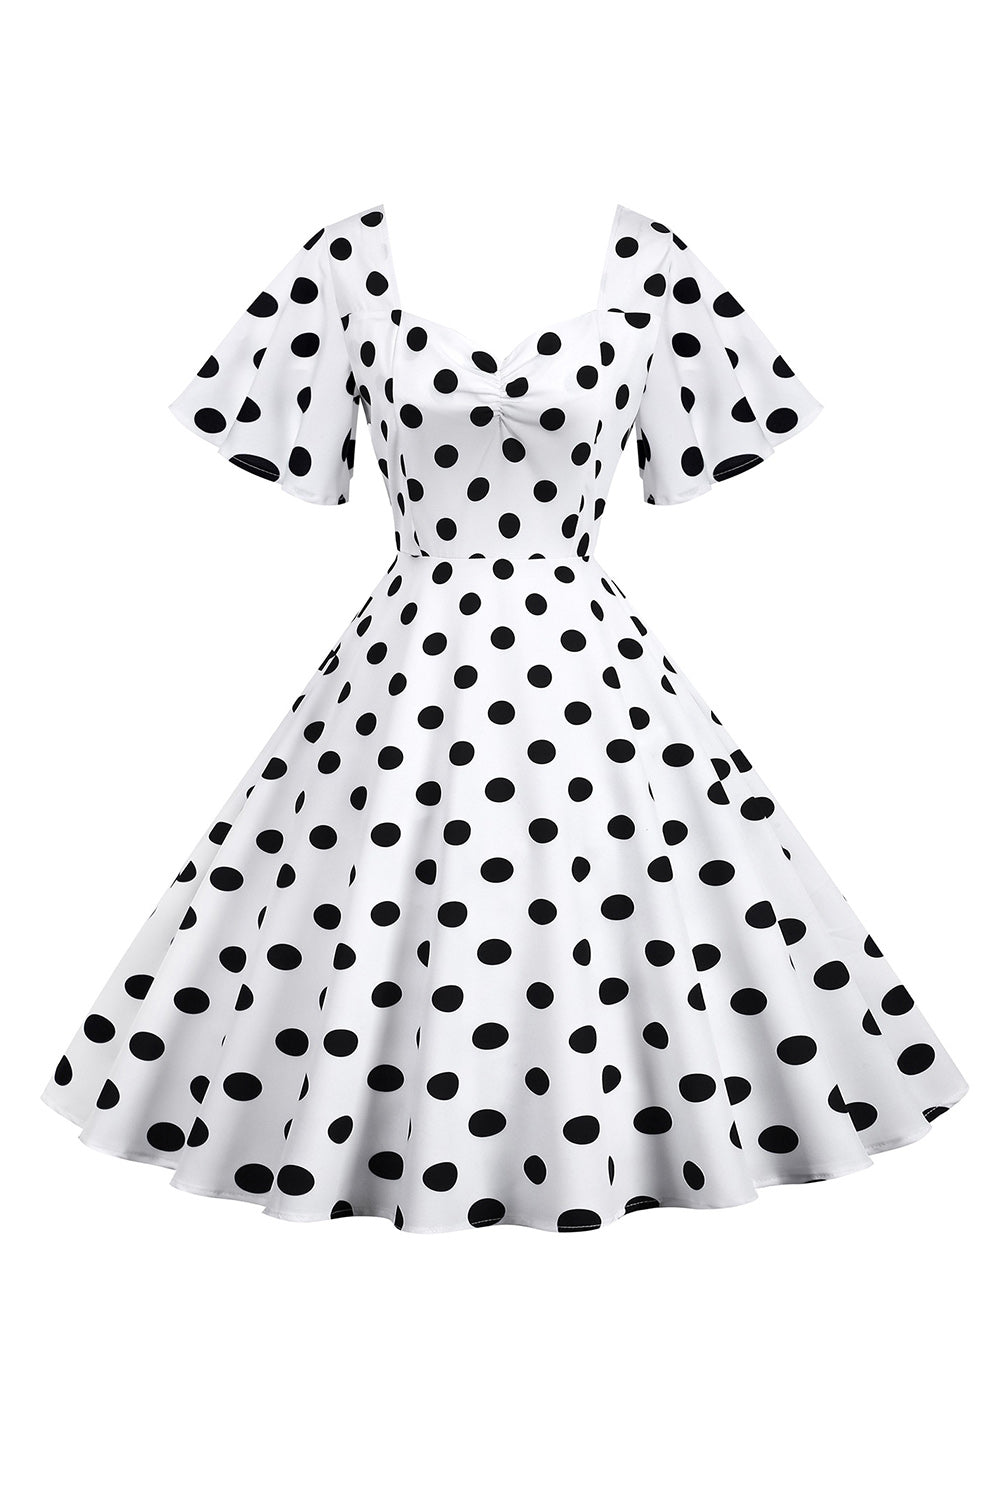 Polka Dots hvit vintage kjole med korte ermer